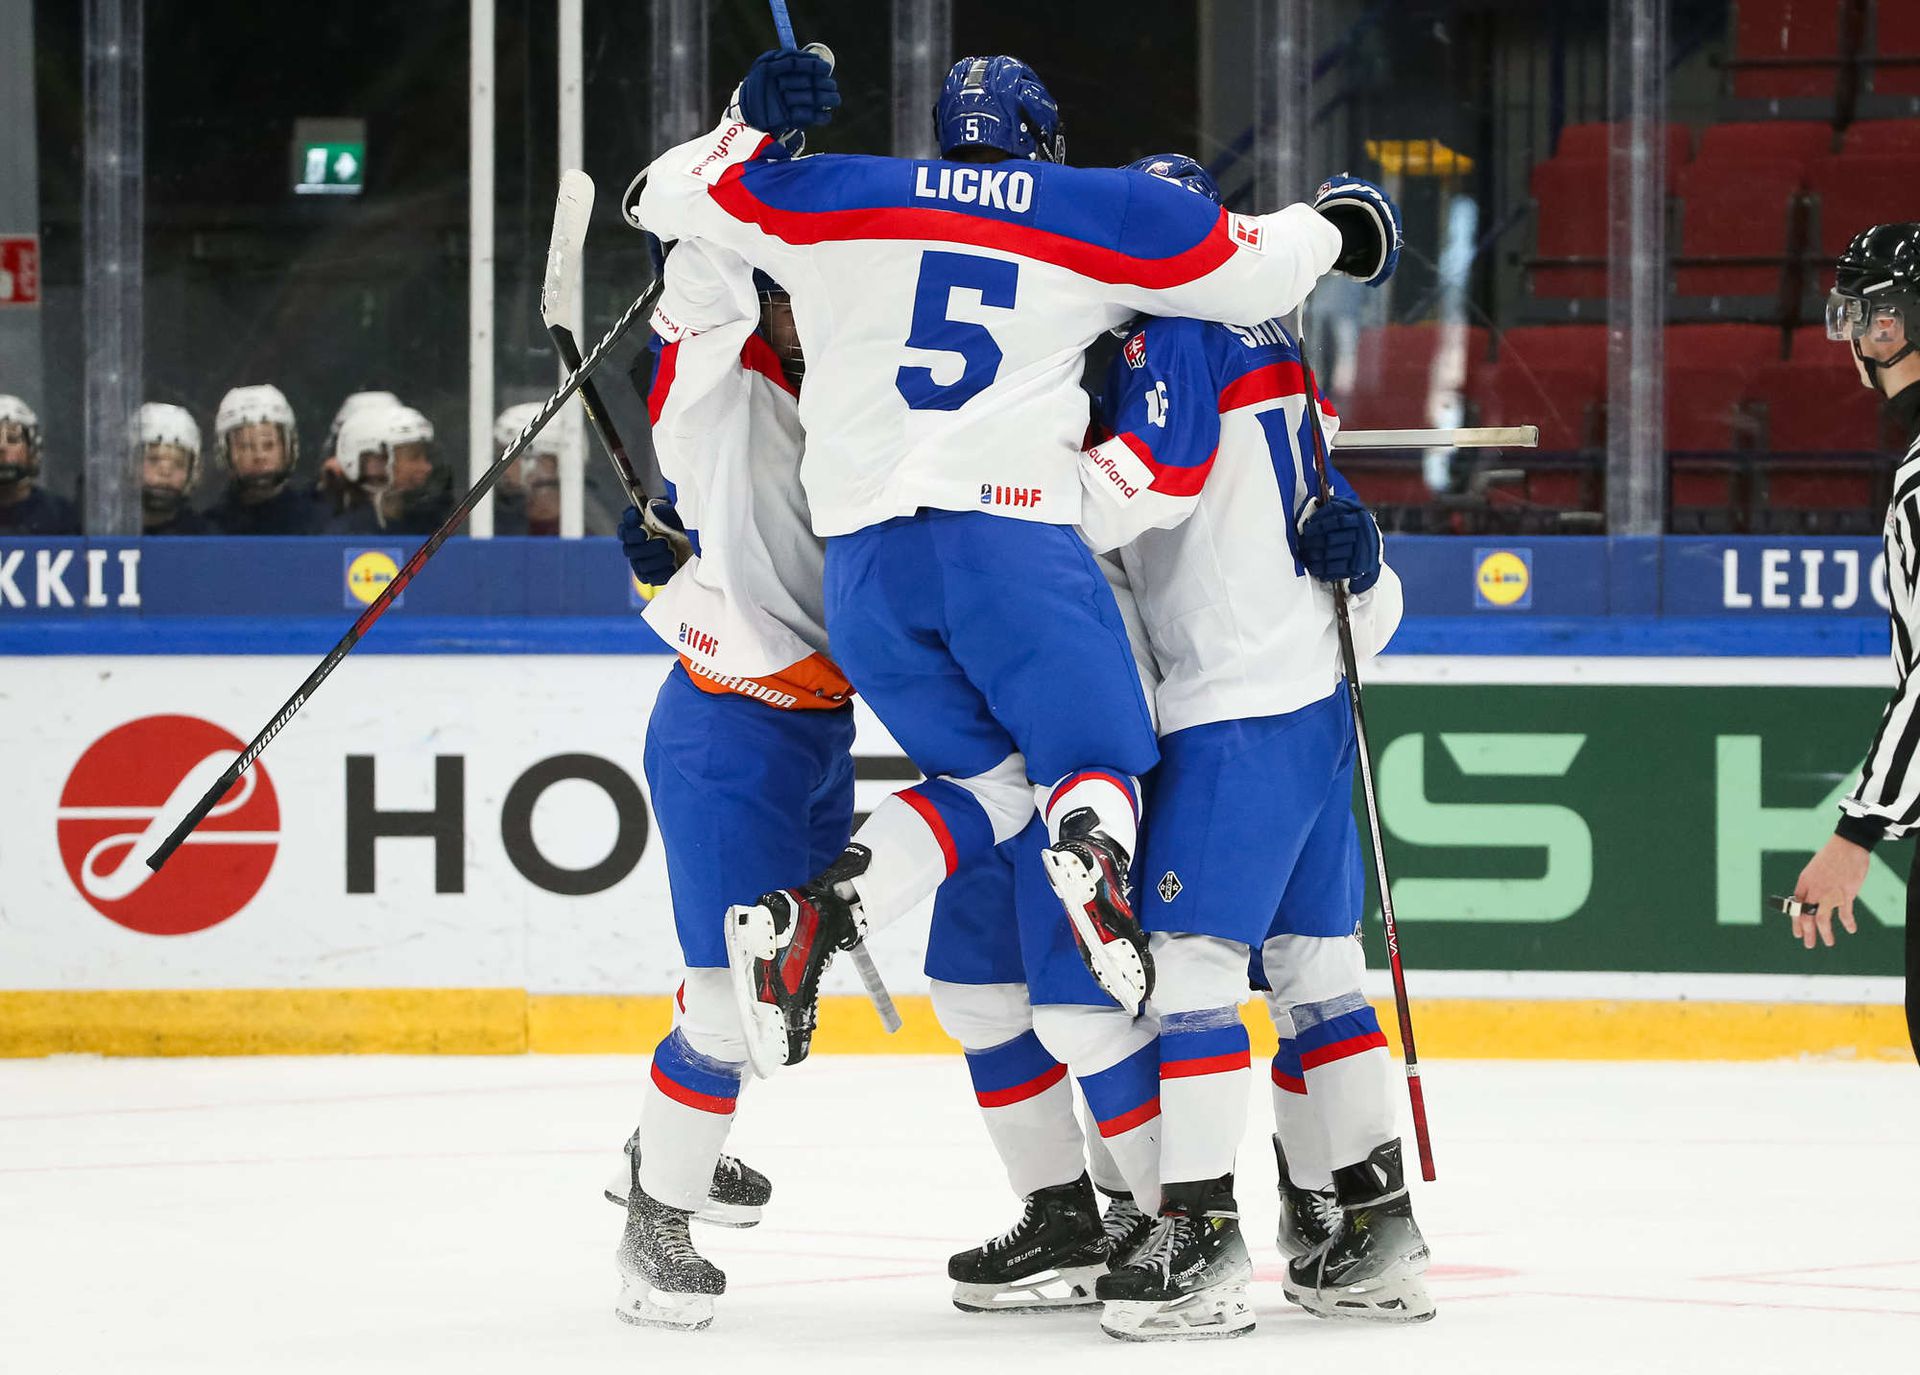 Slovensko U18. Zdroj: IIHF